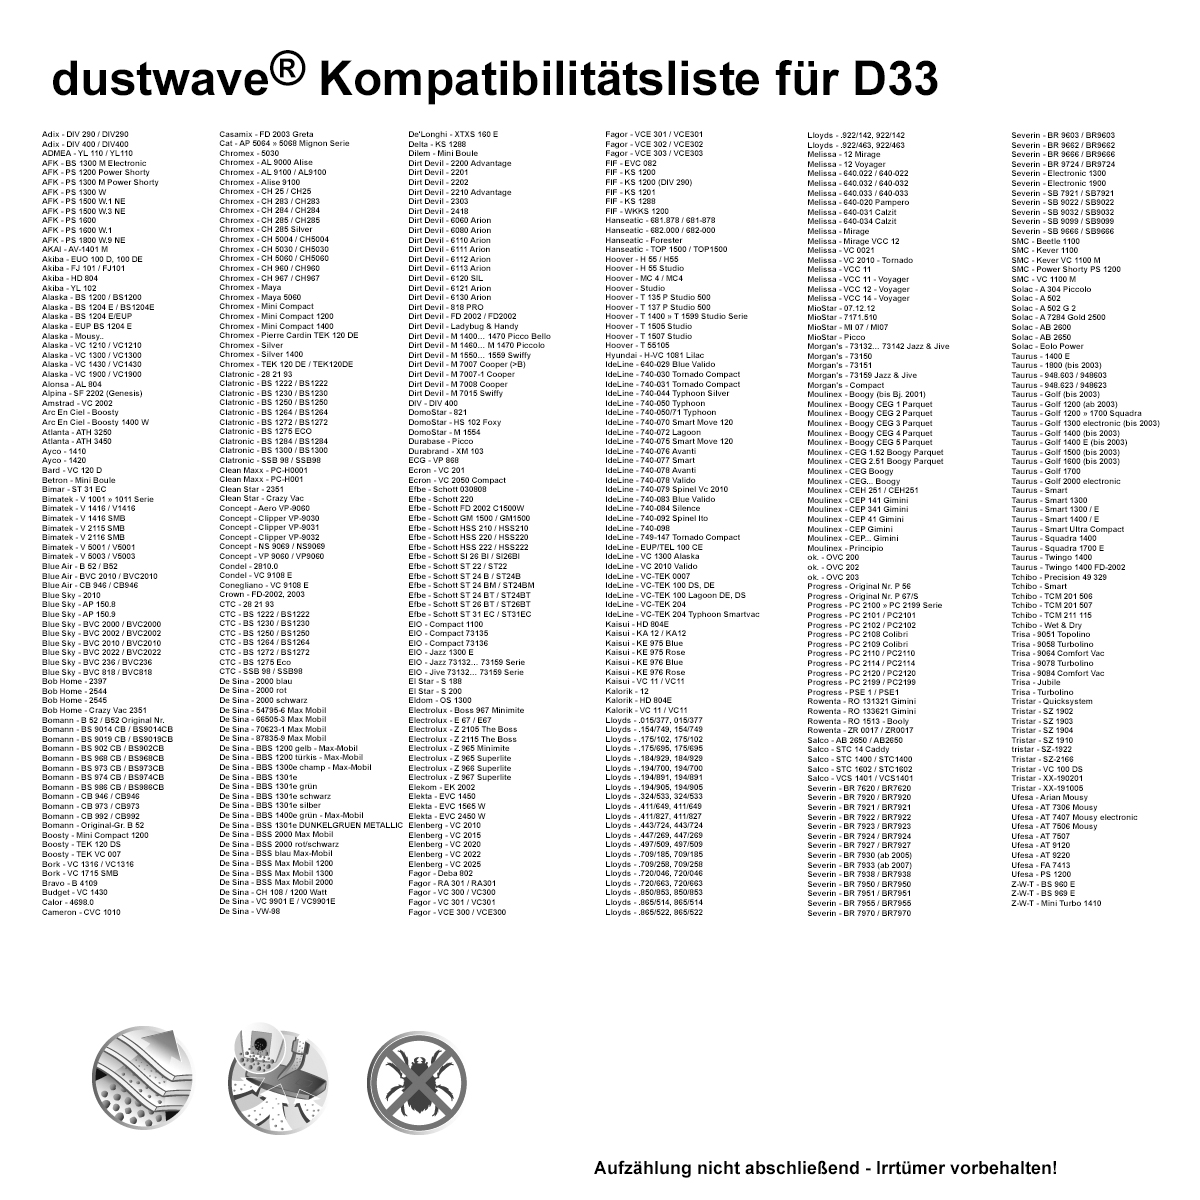 Dustwave® 10 Staubsaugerbeutel für Akiba EUO 100 D, 100 DE - hocheffizient mit Hygieneverschluss - Made in Germany